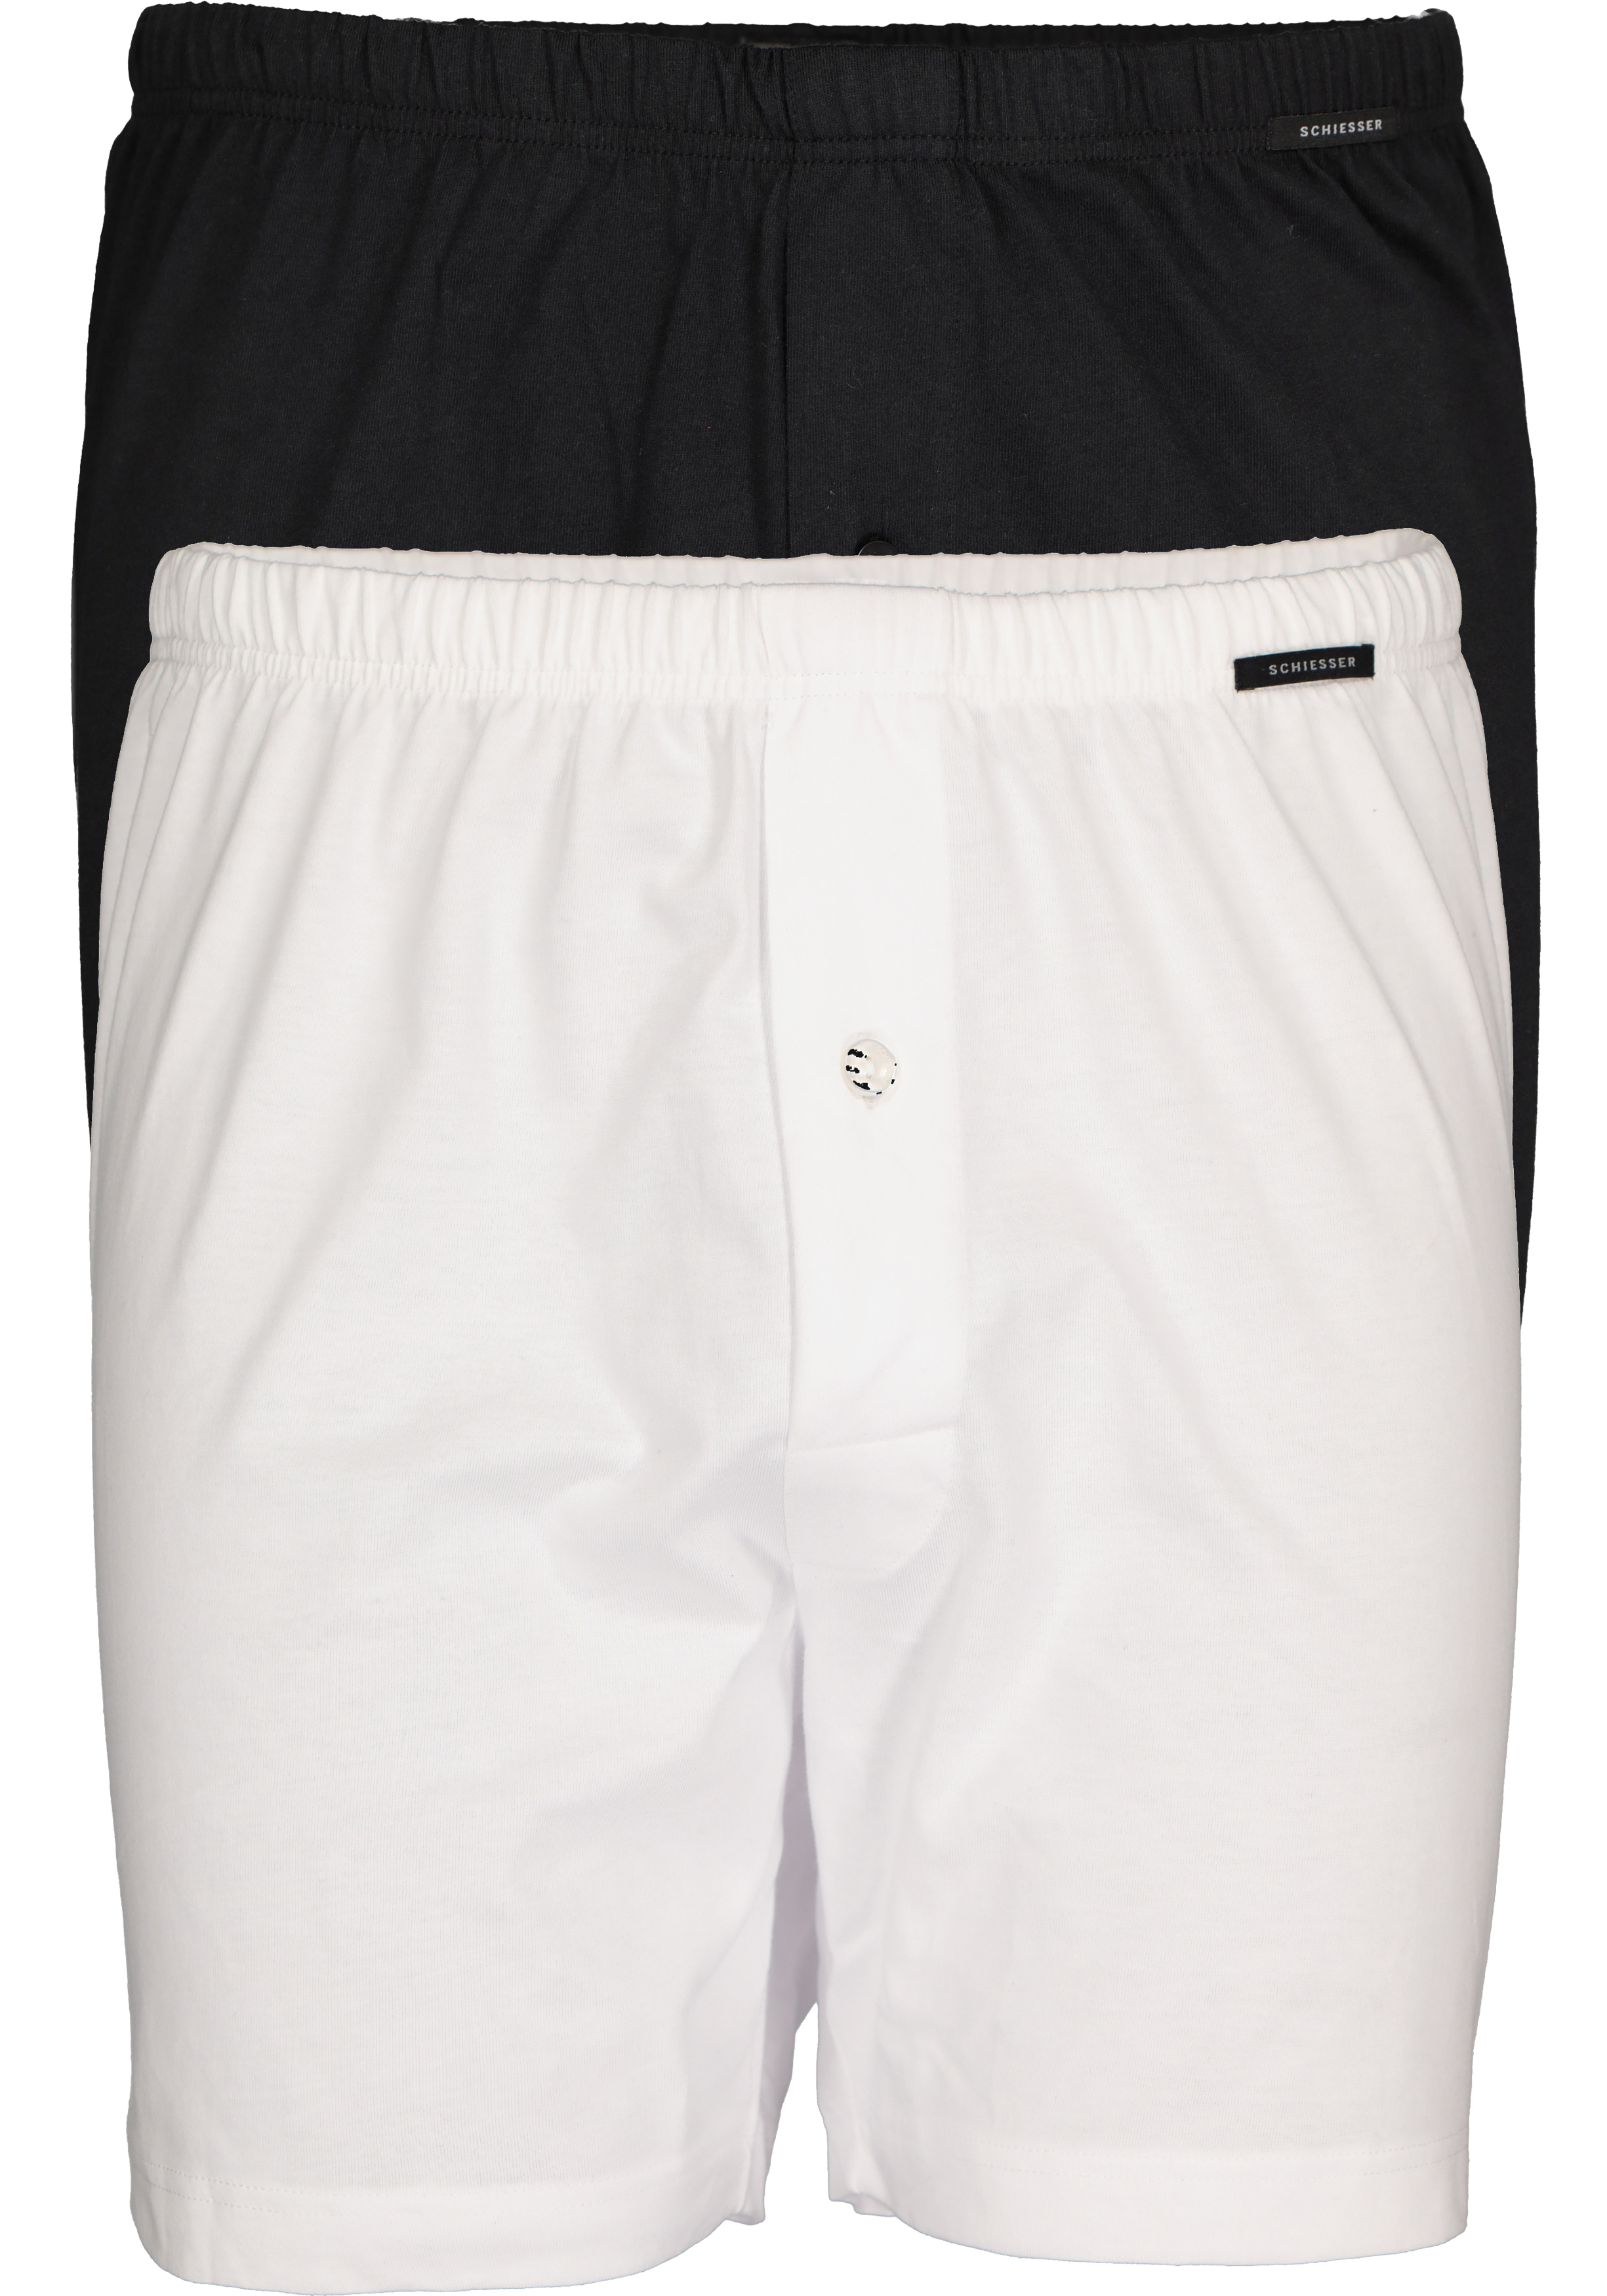 SCHIESSER Cotton Essentials boxershorts wijd (2-pack), tricot, zwart en wit